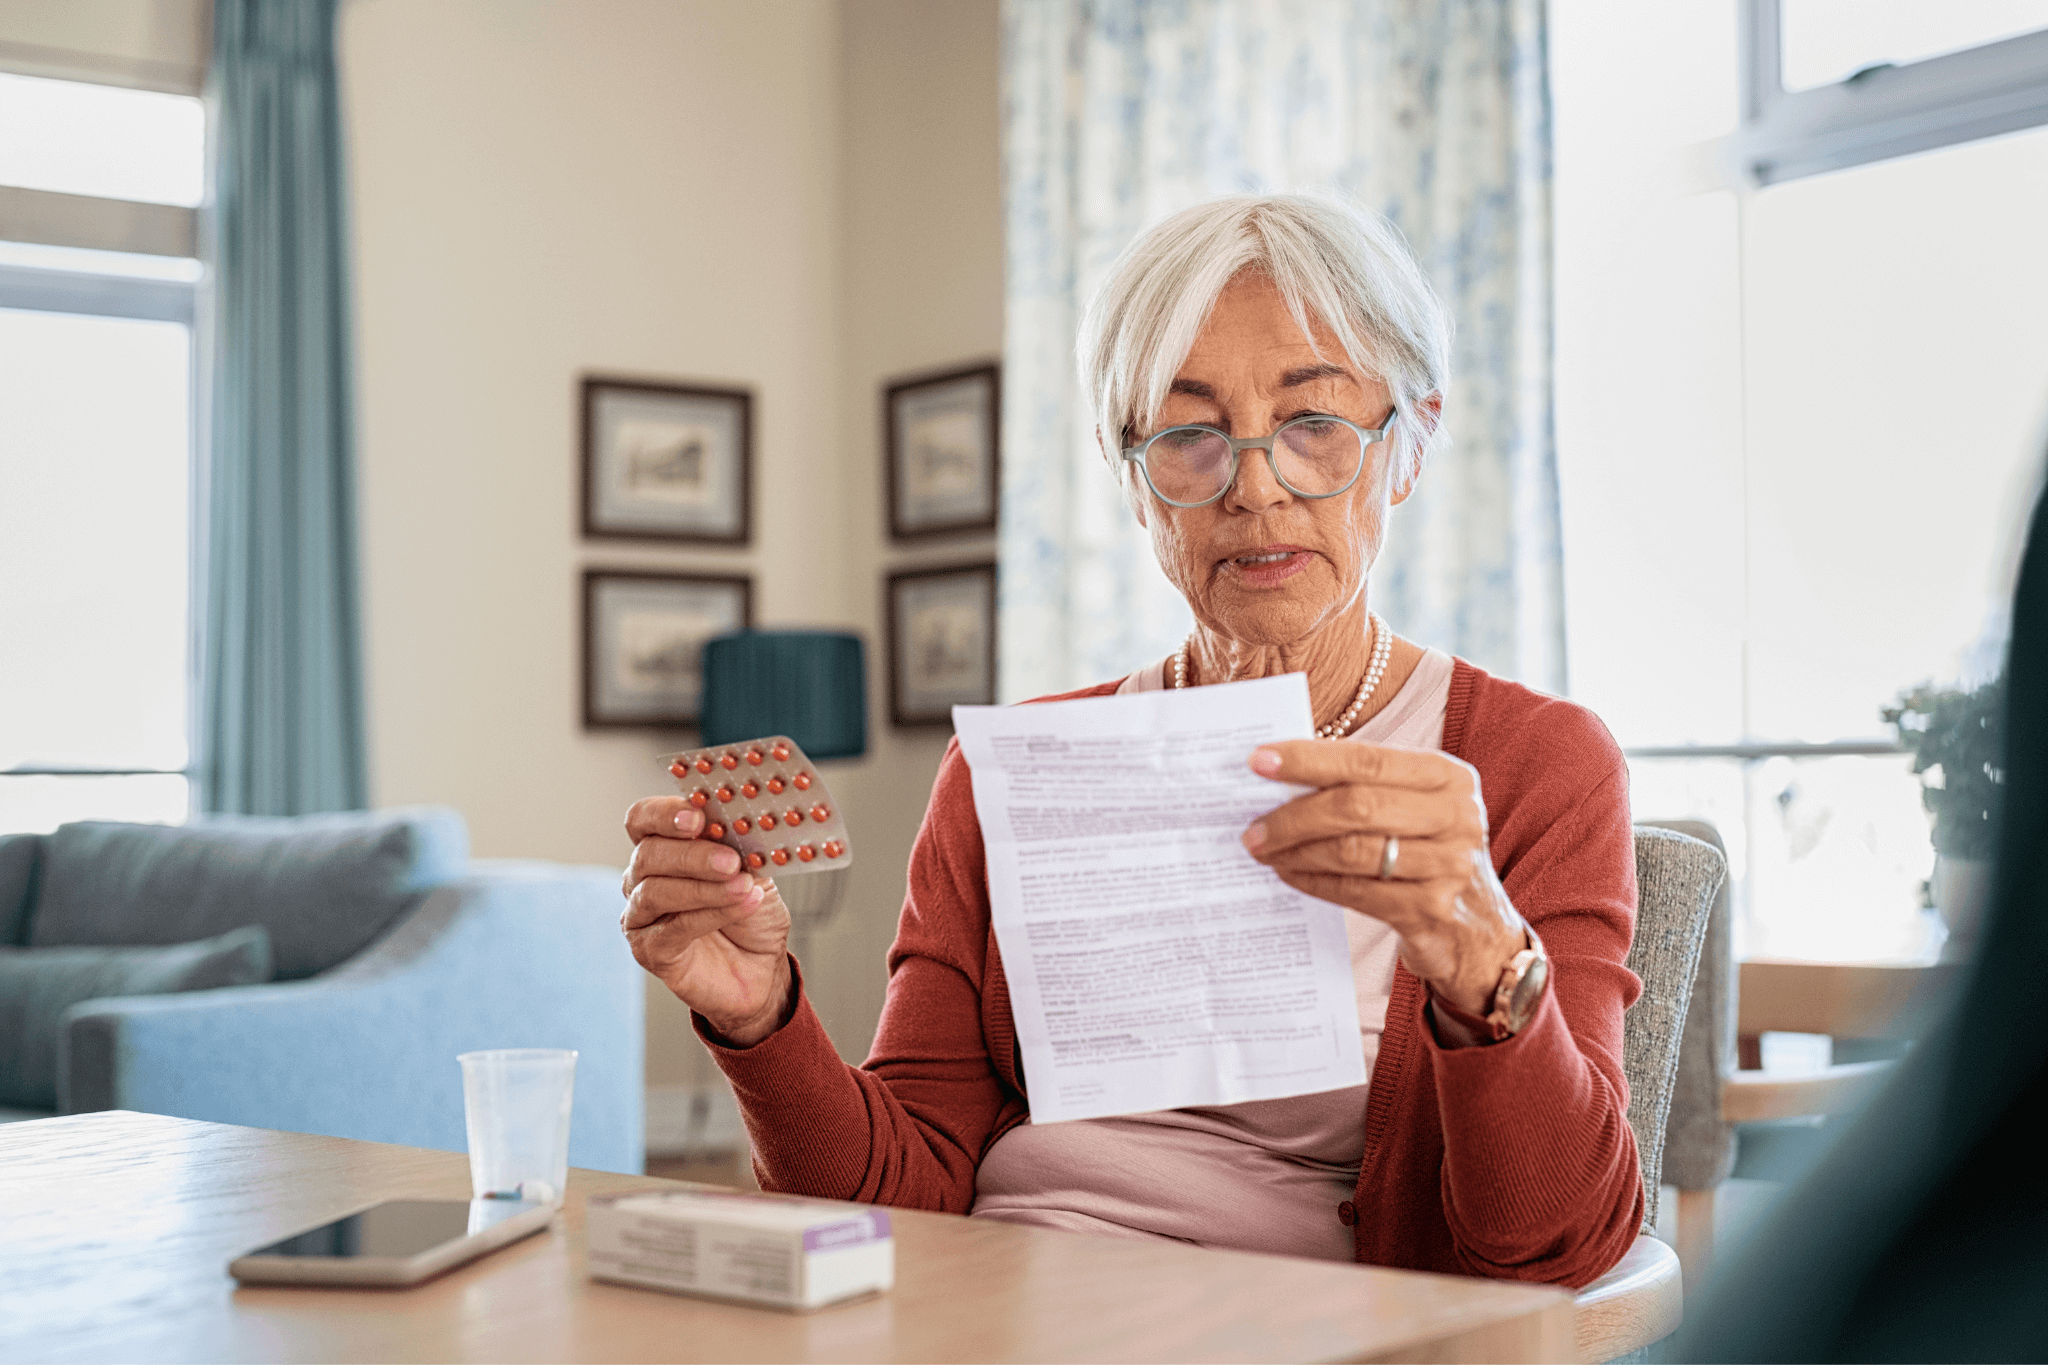 Patientin im Seniorenalter hält Arzneimittelpackung in der Hand und lliest die Packungsbeilage